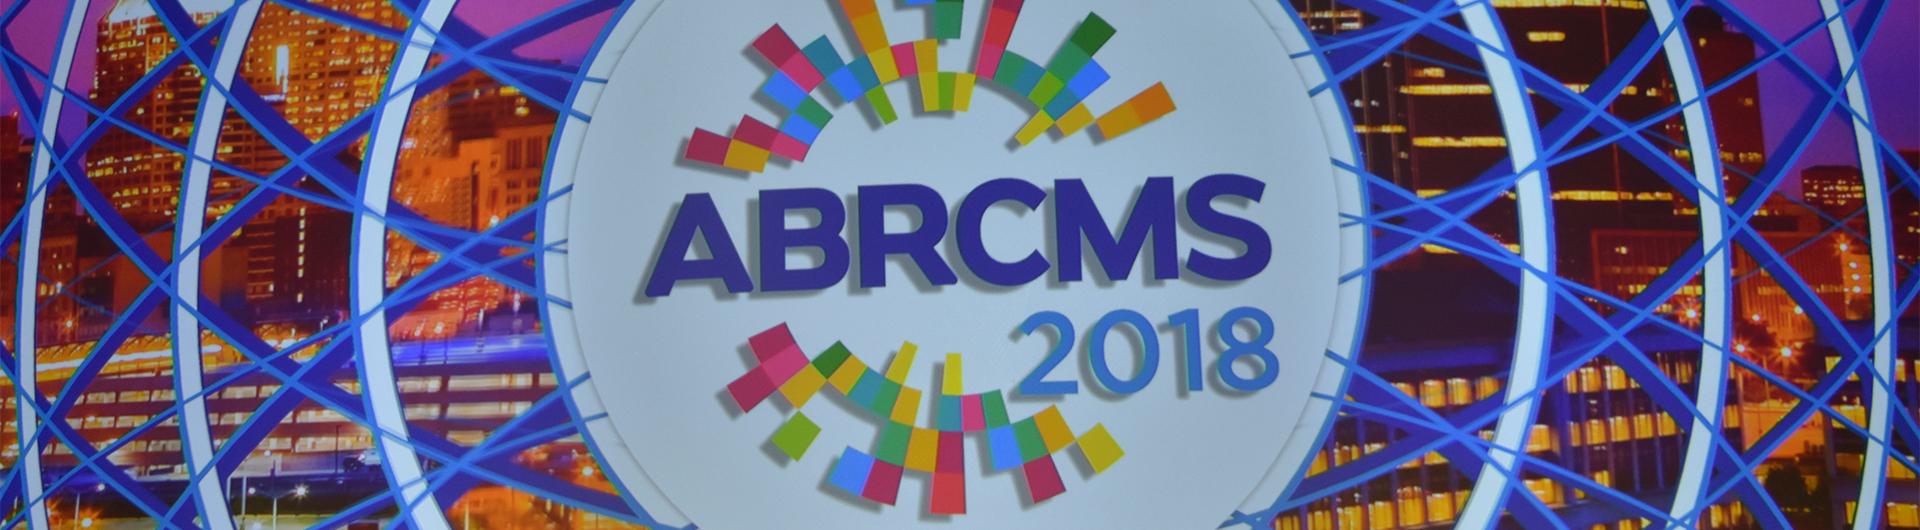 ABRCMS 2018 banner